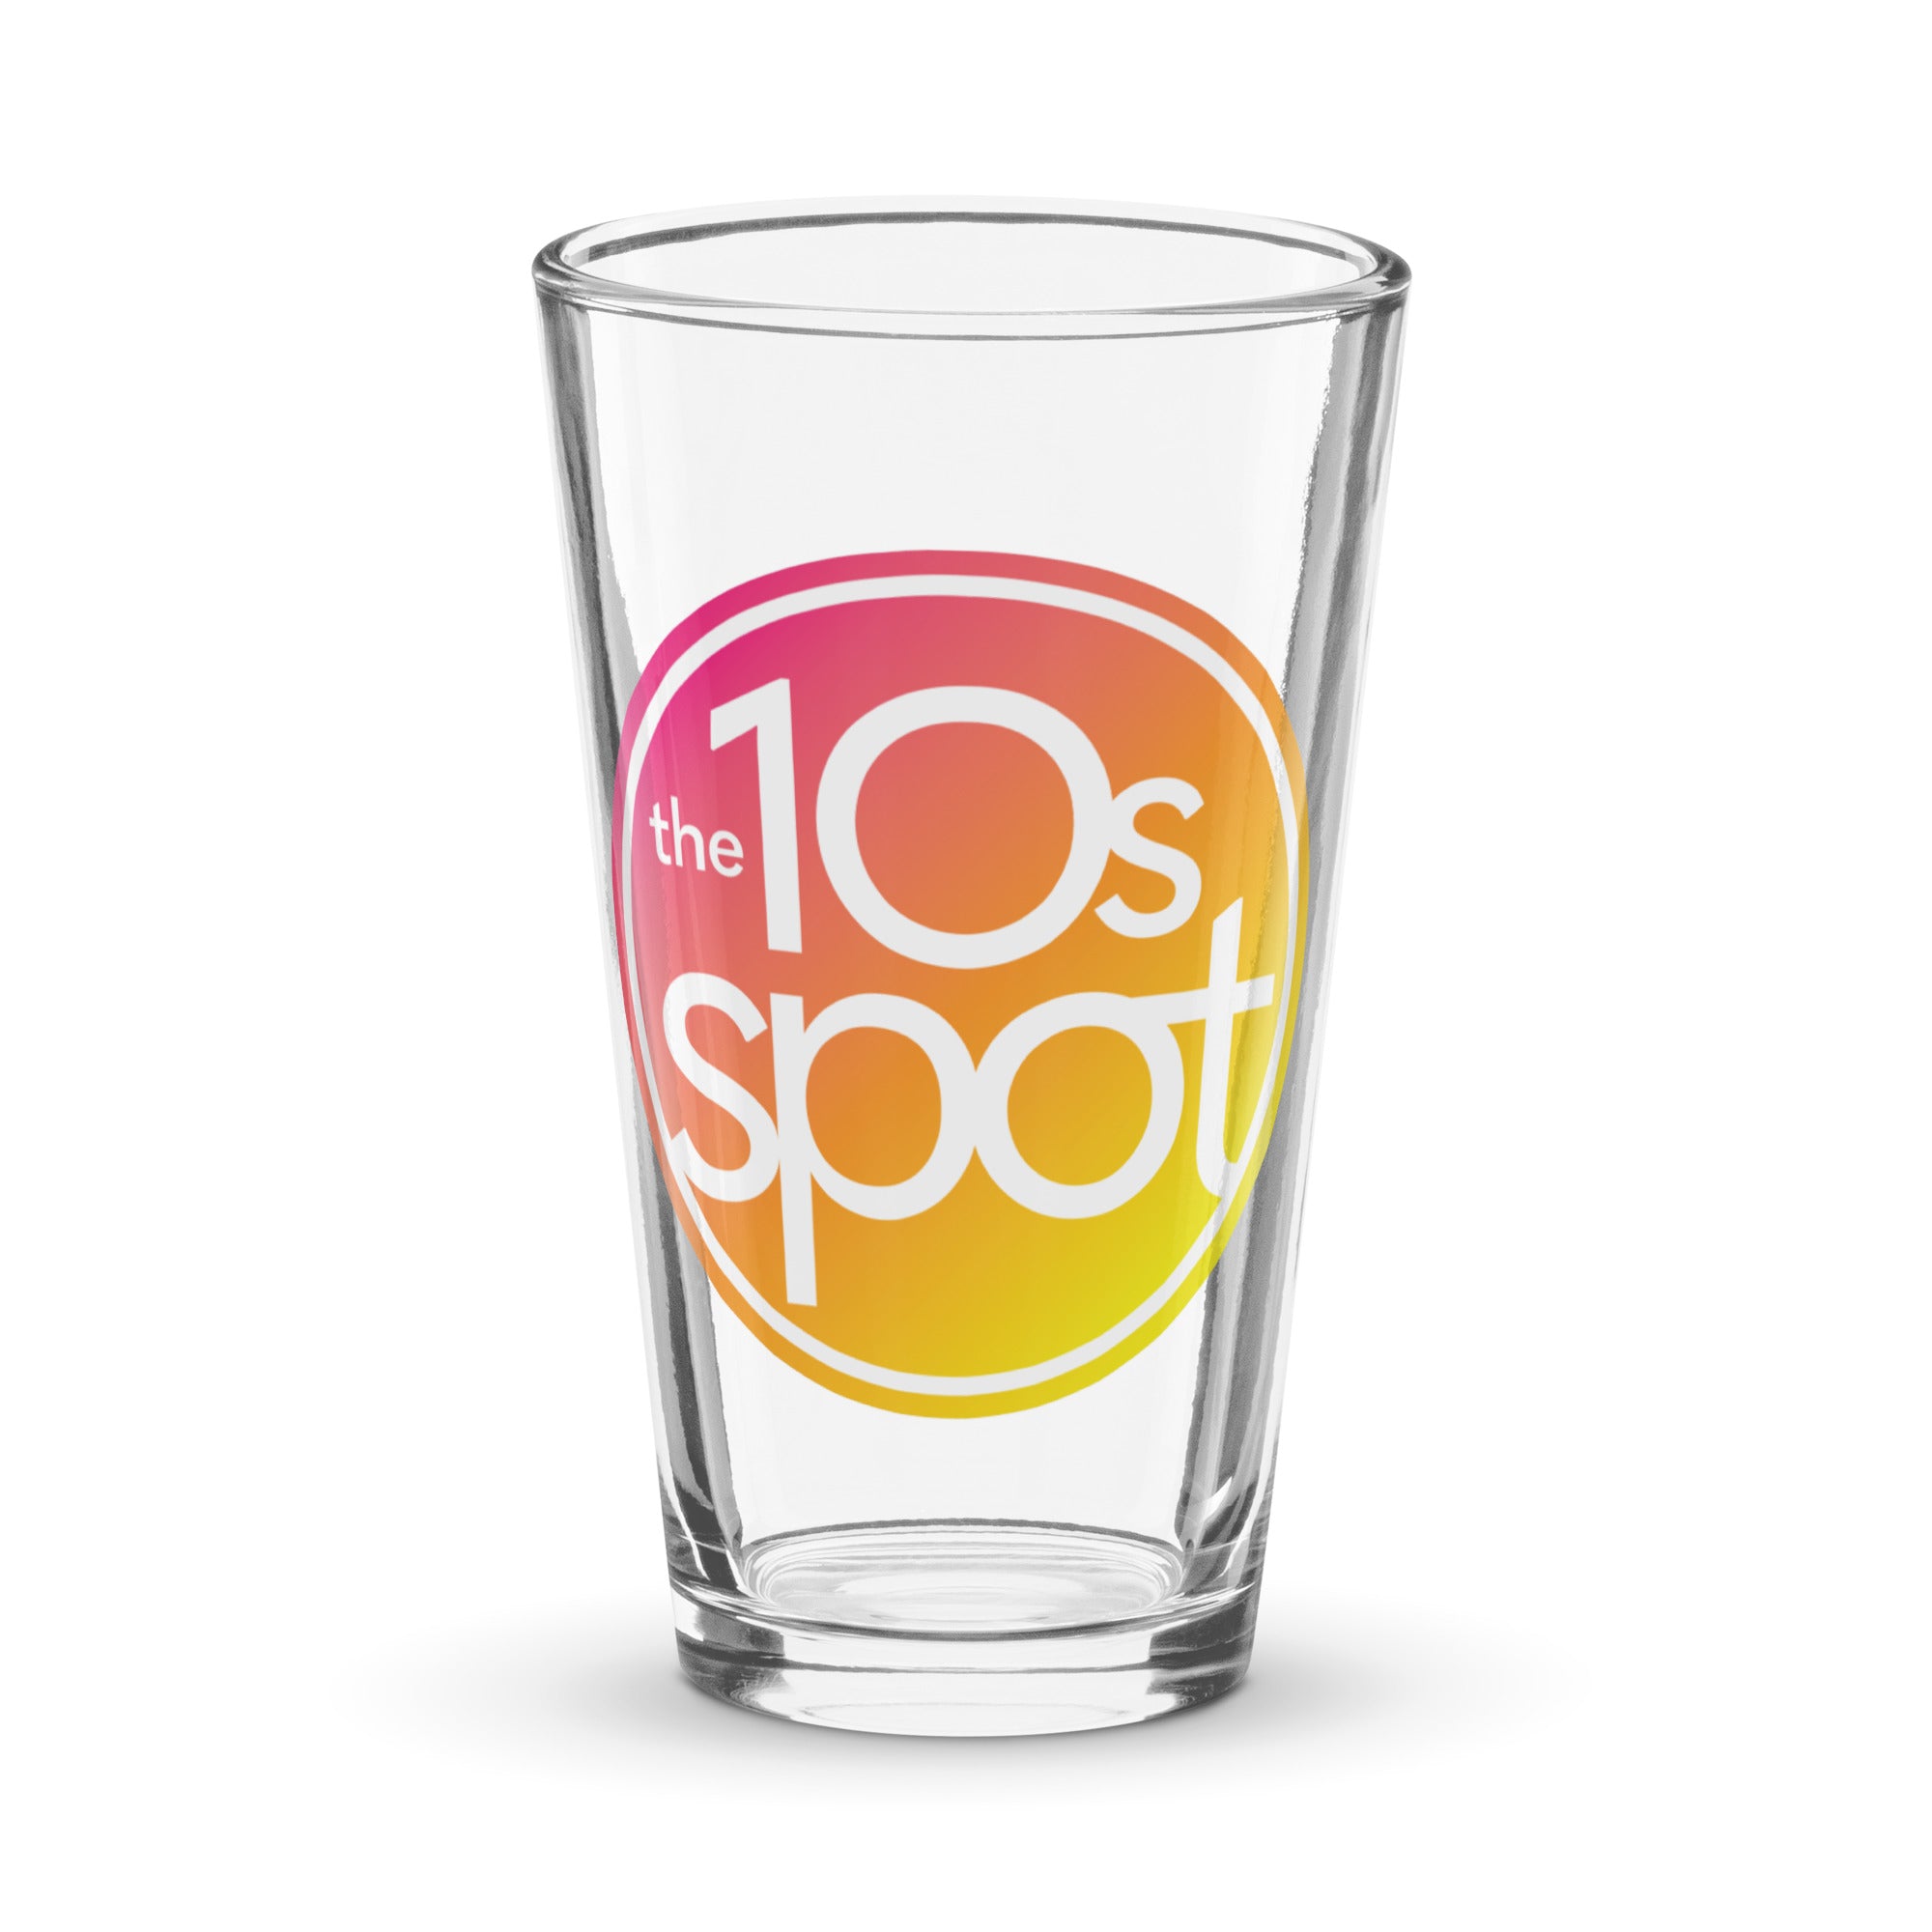 The 10s Spot: Pint Glass